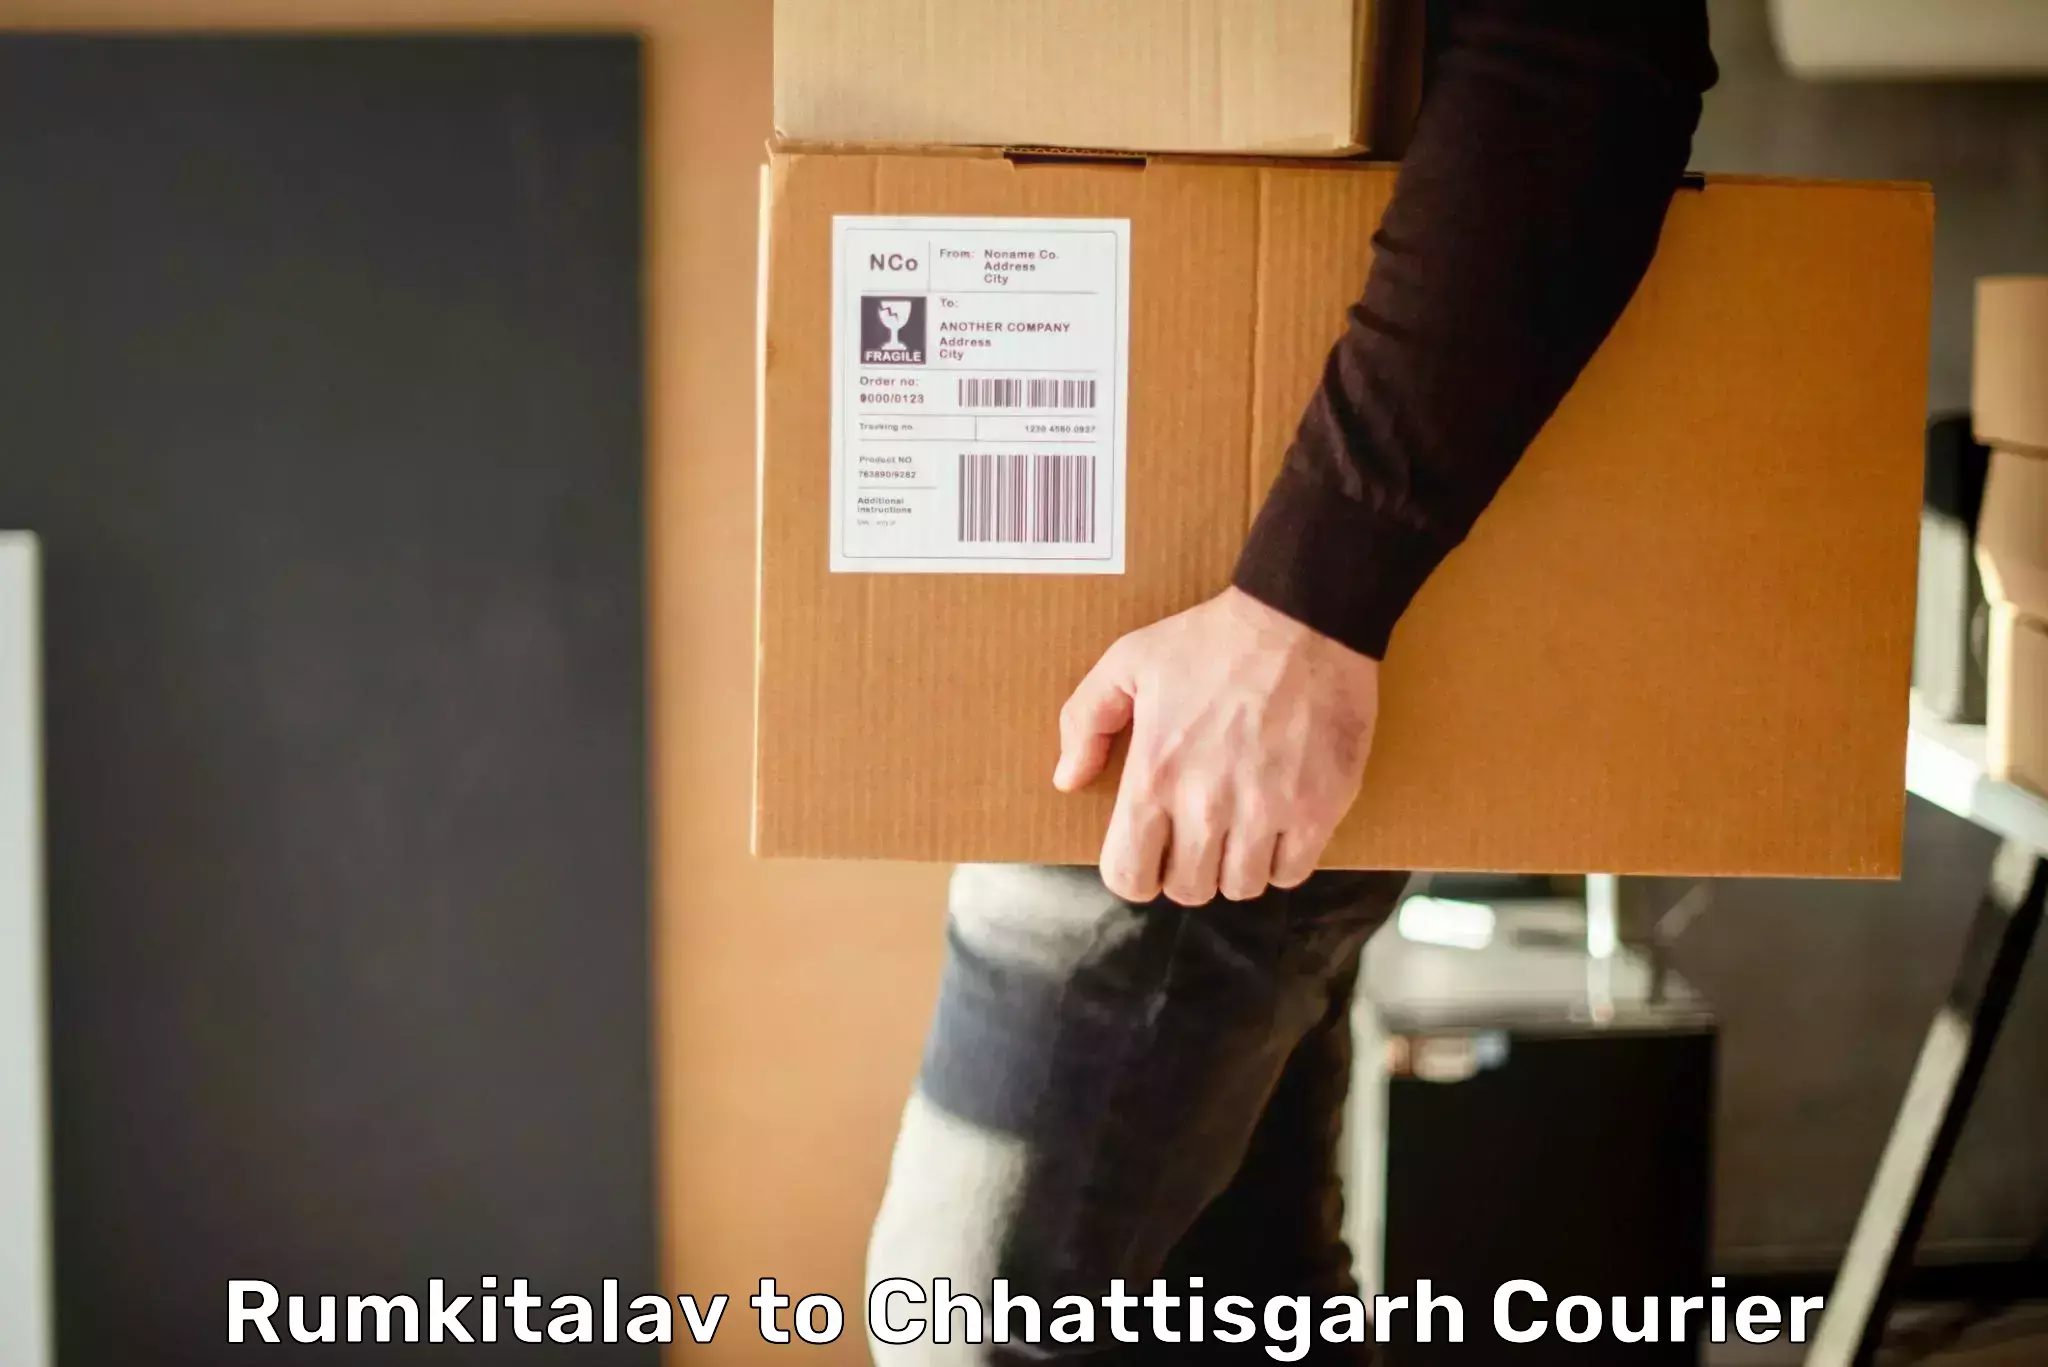 Residential courier service Rumkitalav to Chhattisgarh